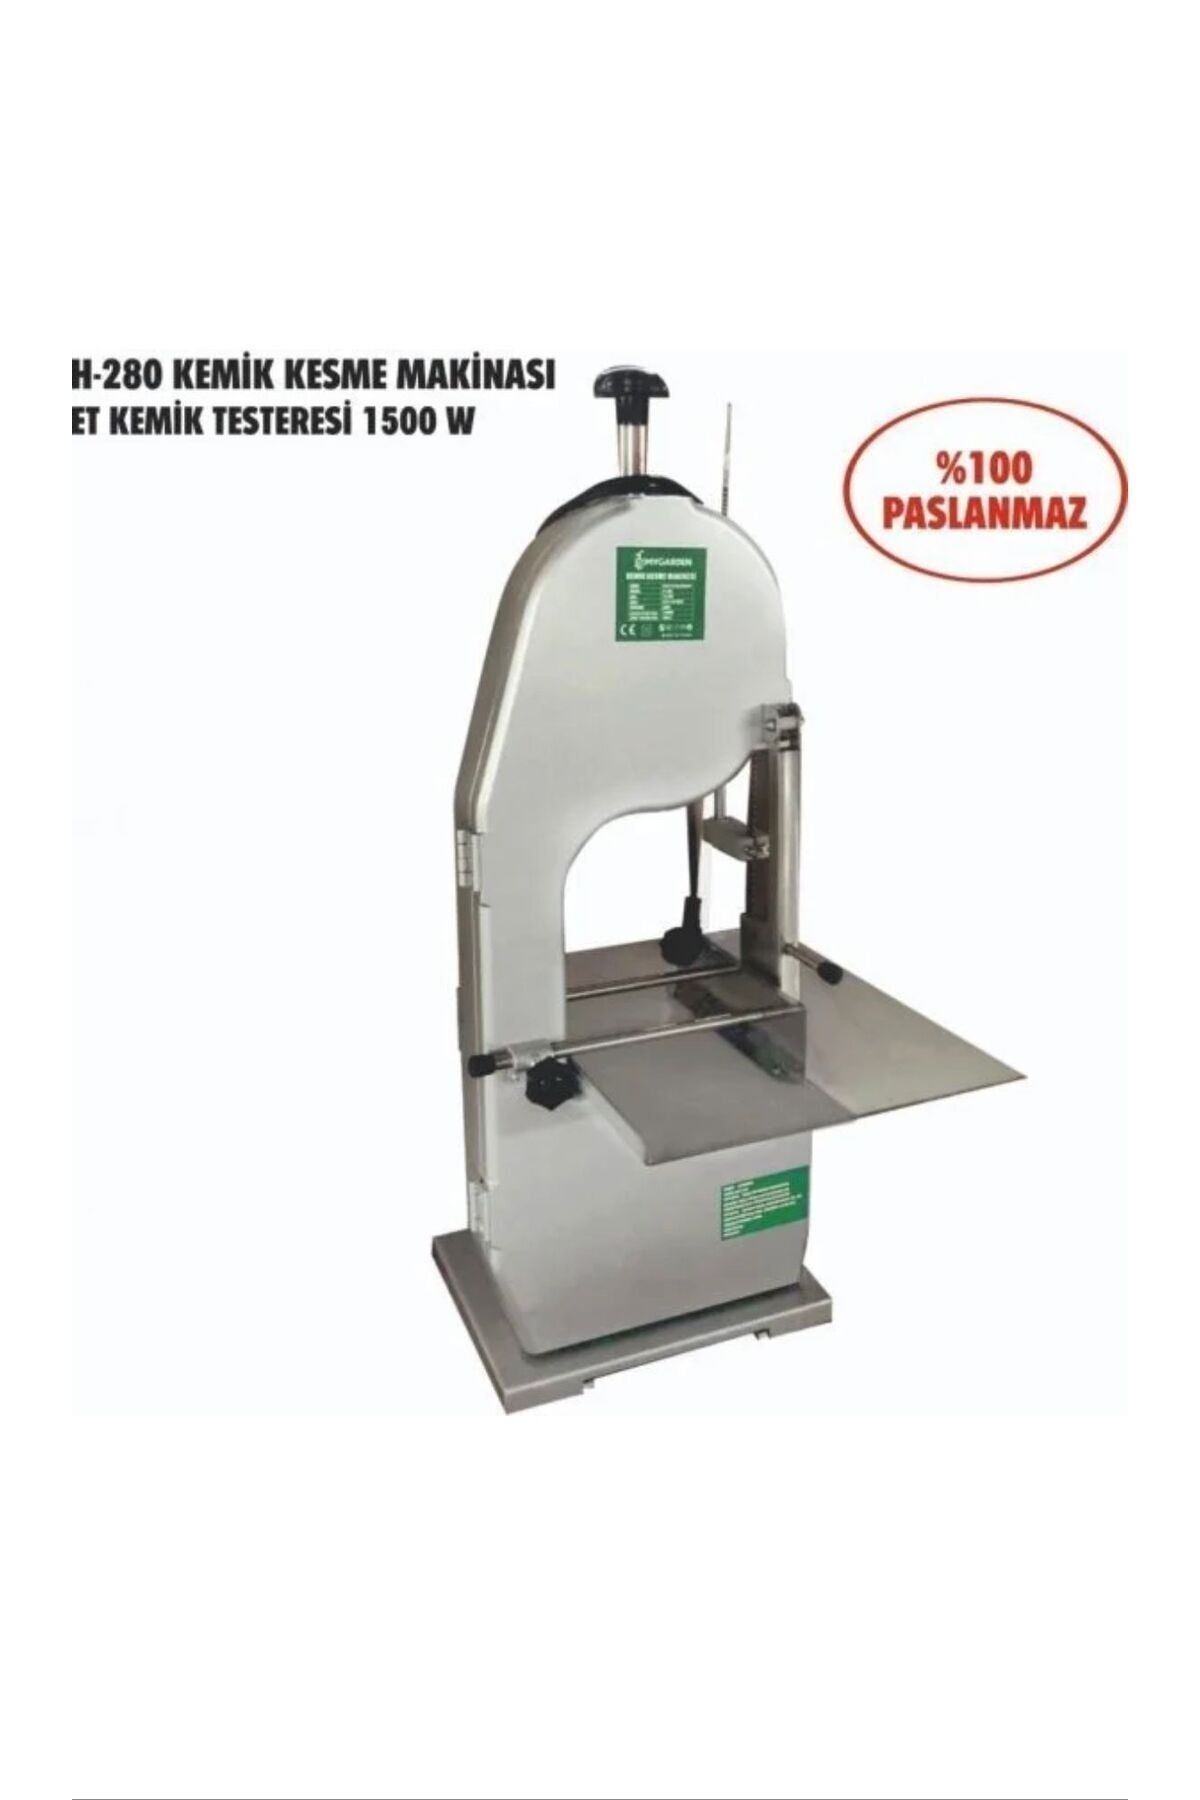 VEMAKS VMK H-280 1500W Paslanmaz Kemik Kesme Makinası